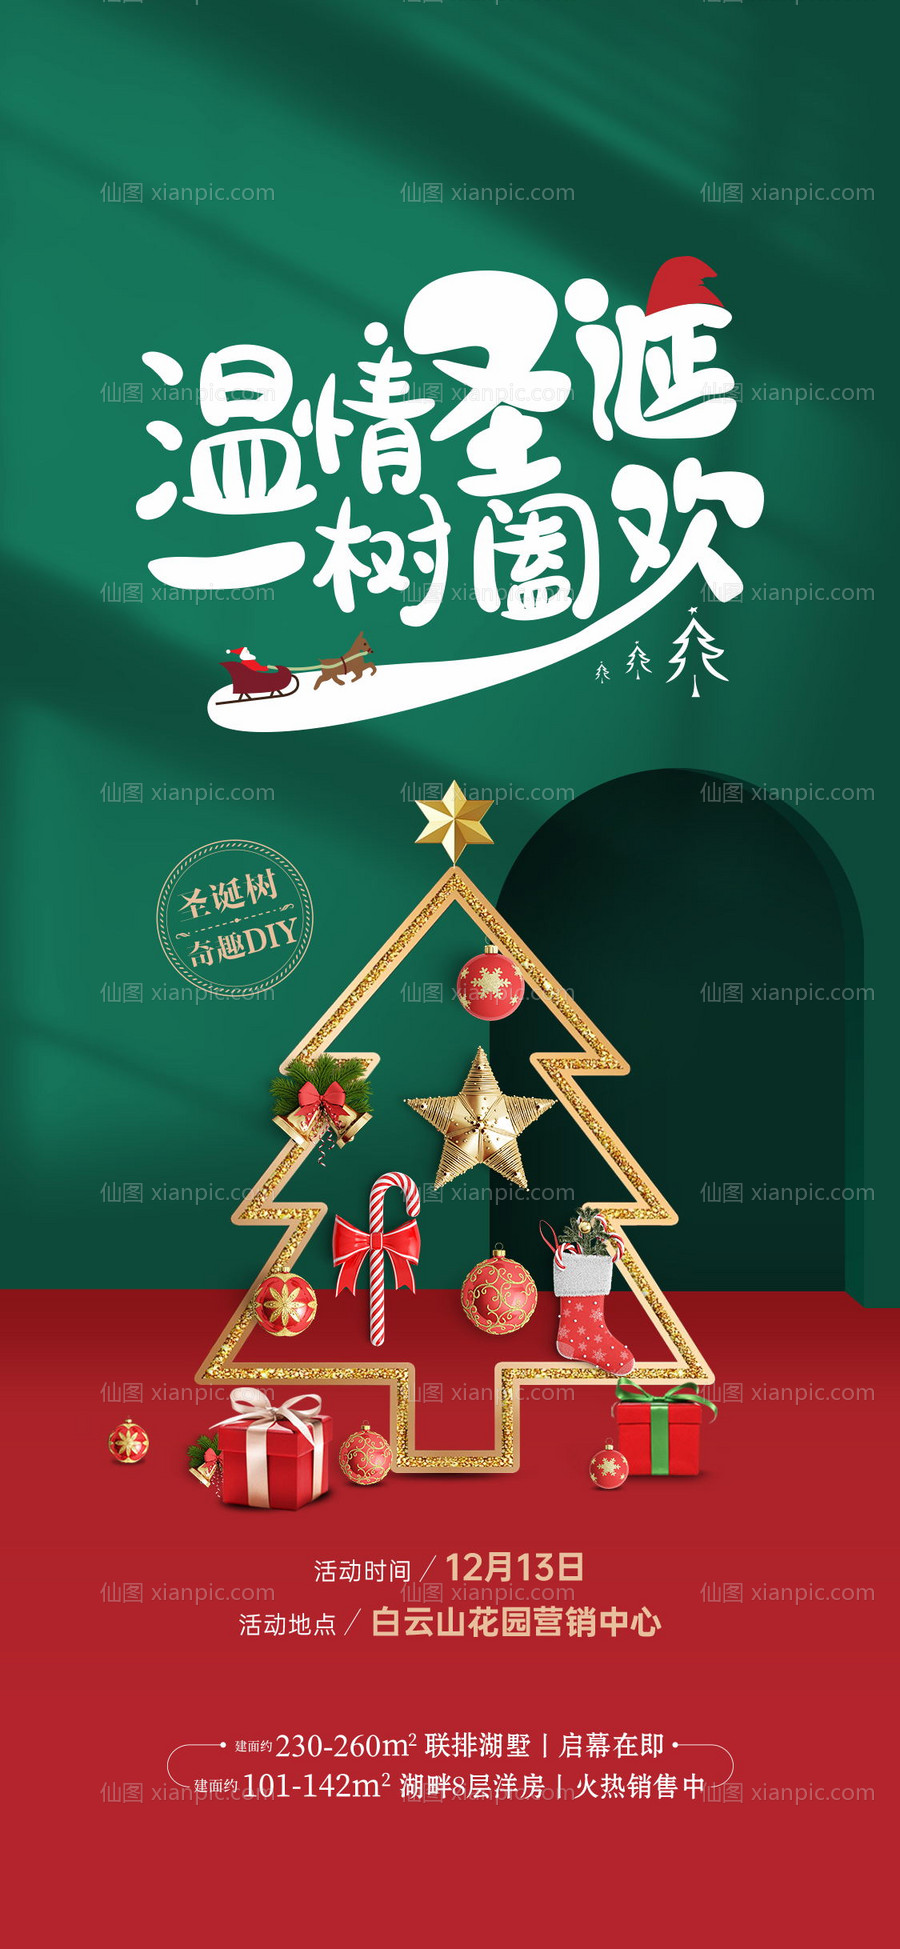 仙图网-圣诞树diy活动刷屏海报